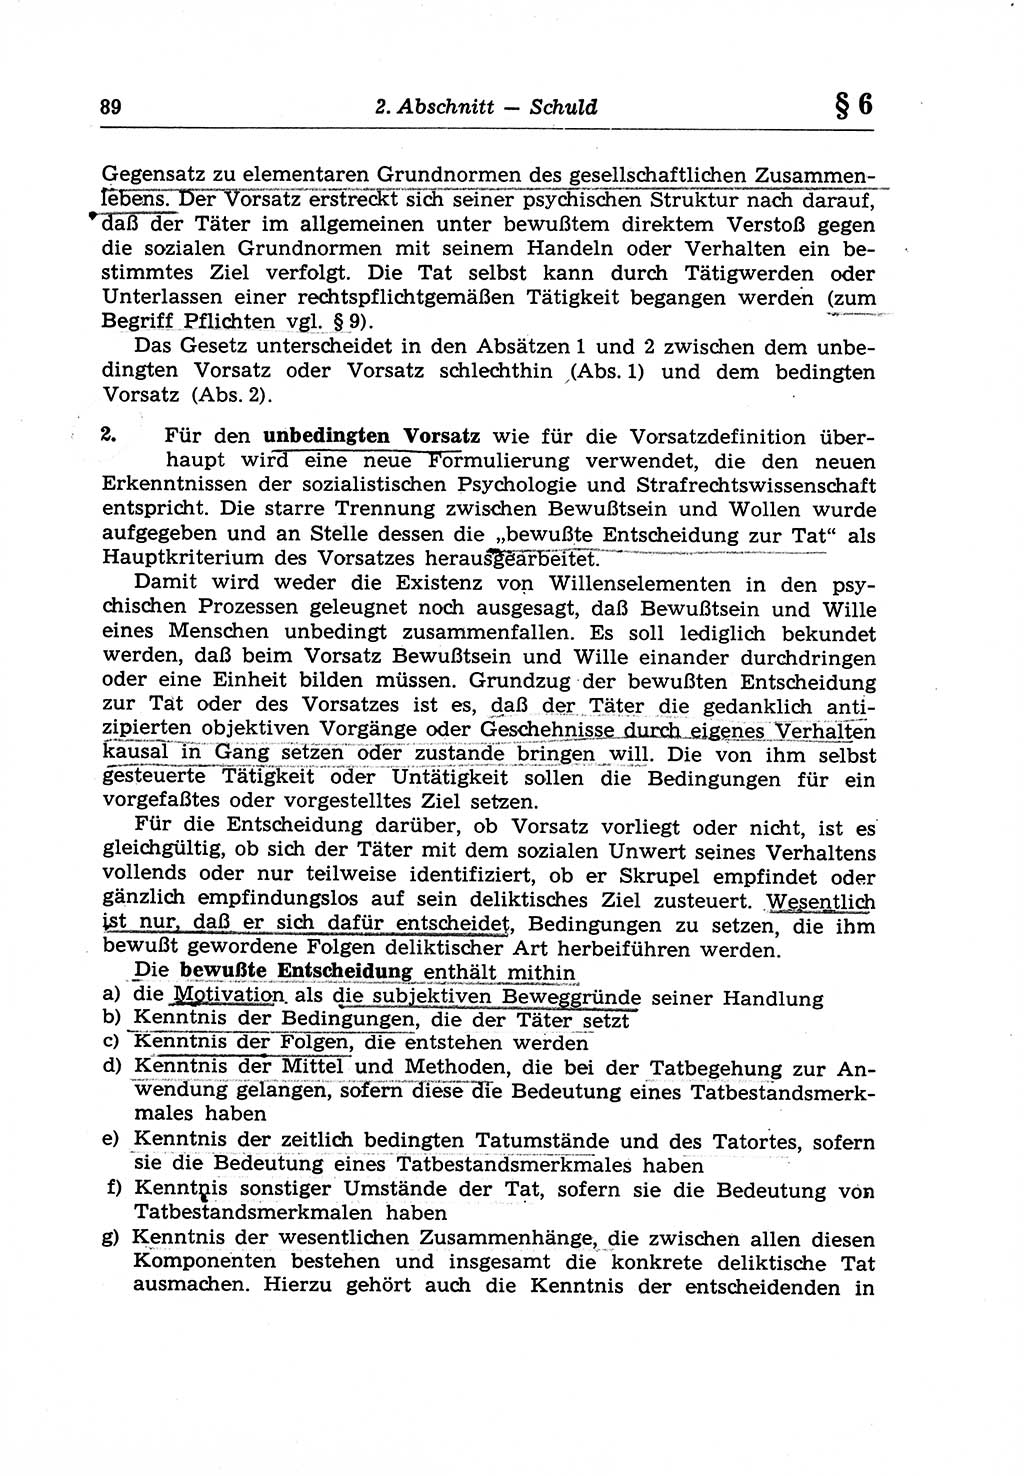 Strafrecht der Deutschen Demokratischen Republik (DDR), Lehrkommentar zum Strafgesetzbuch (StGB), Allgemeiner Teil 1970, Seite 89 (Strafr. DDR Lehrkomm. StGB AT 1970, S. 89)